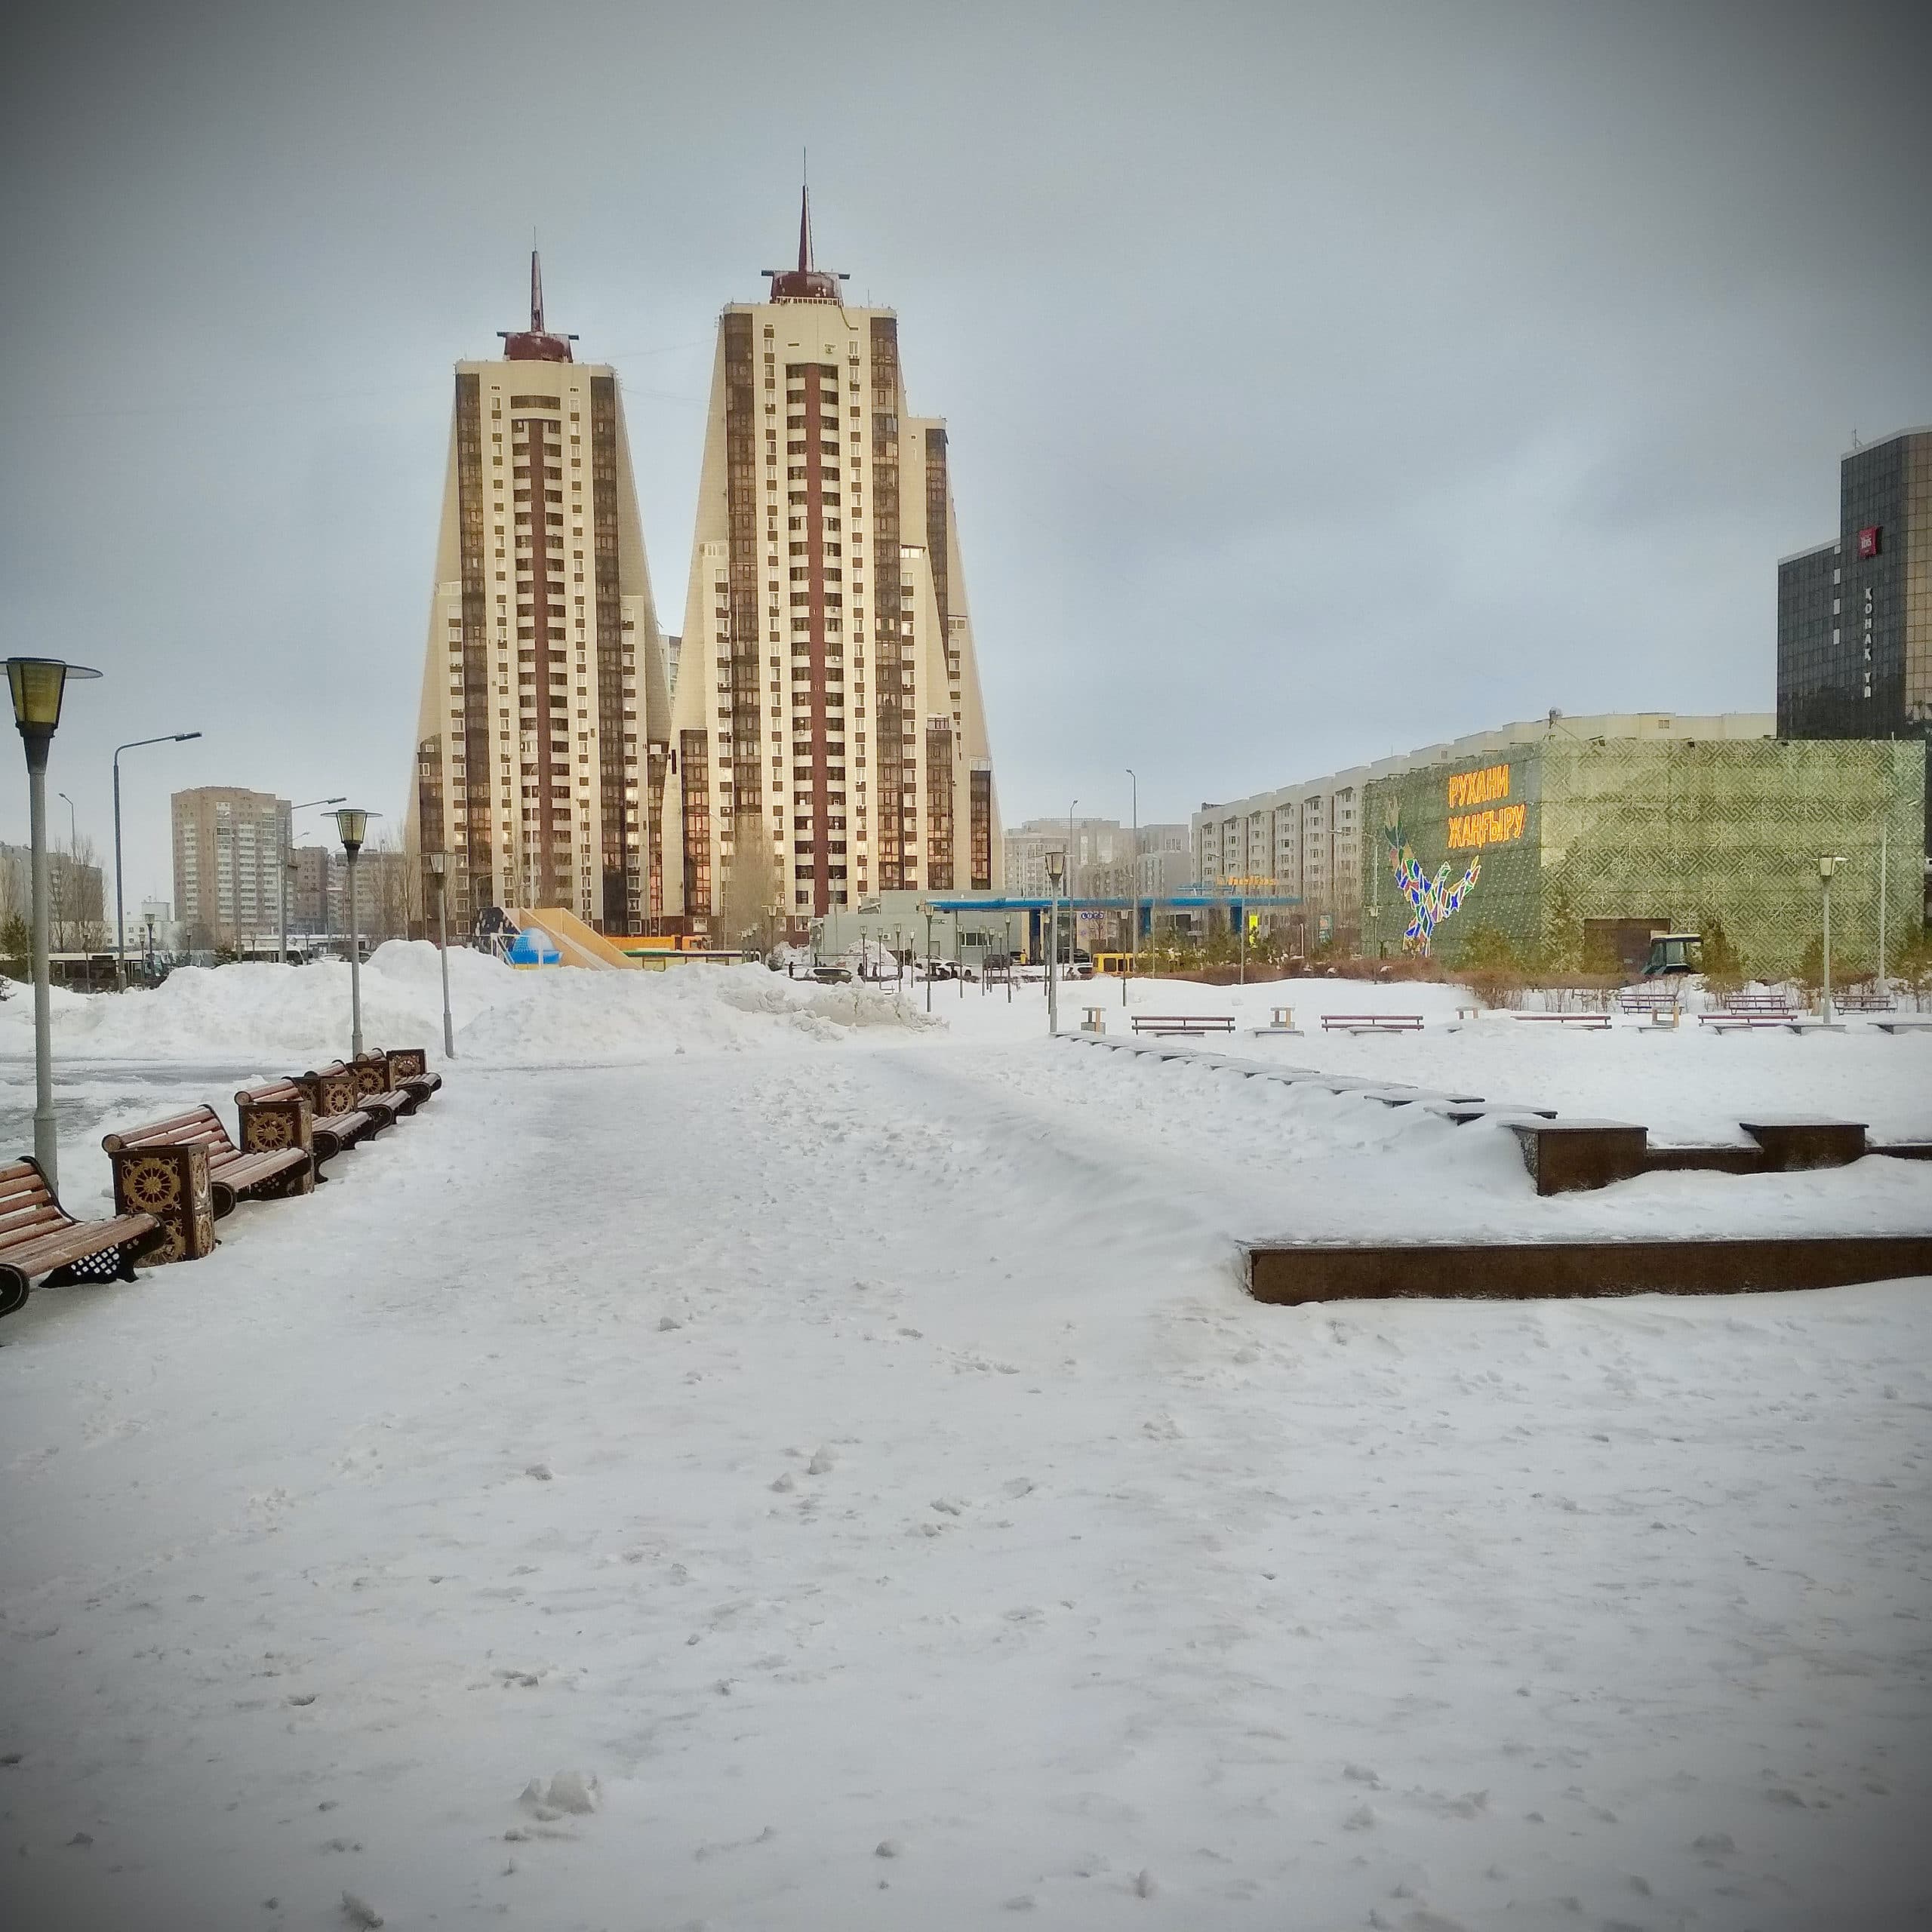 Нур-Султан, столица Республики Казахстан, февраль 2020 г. (© Газинур Гиздатов)